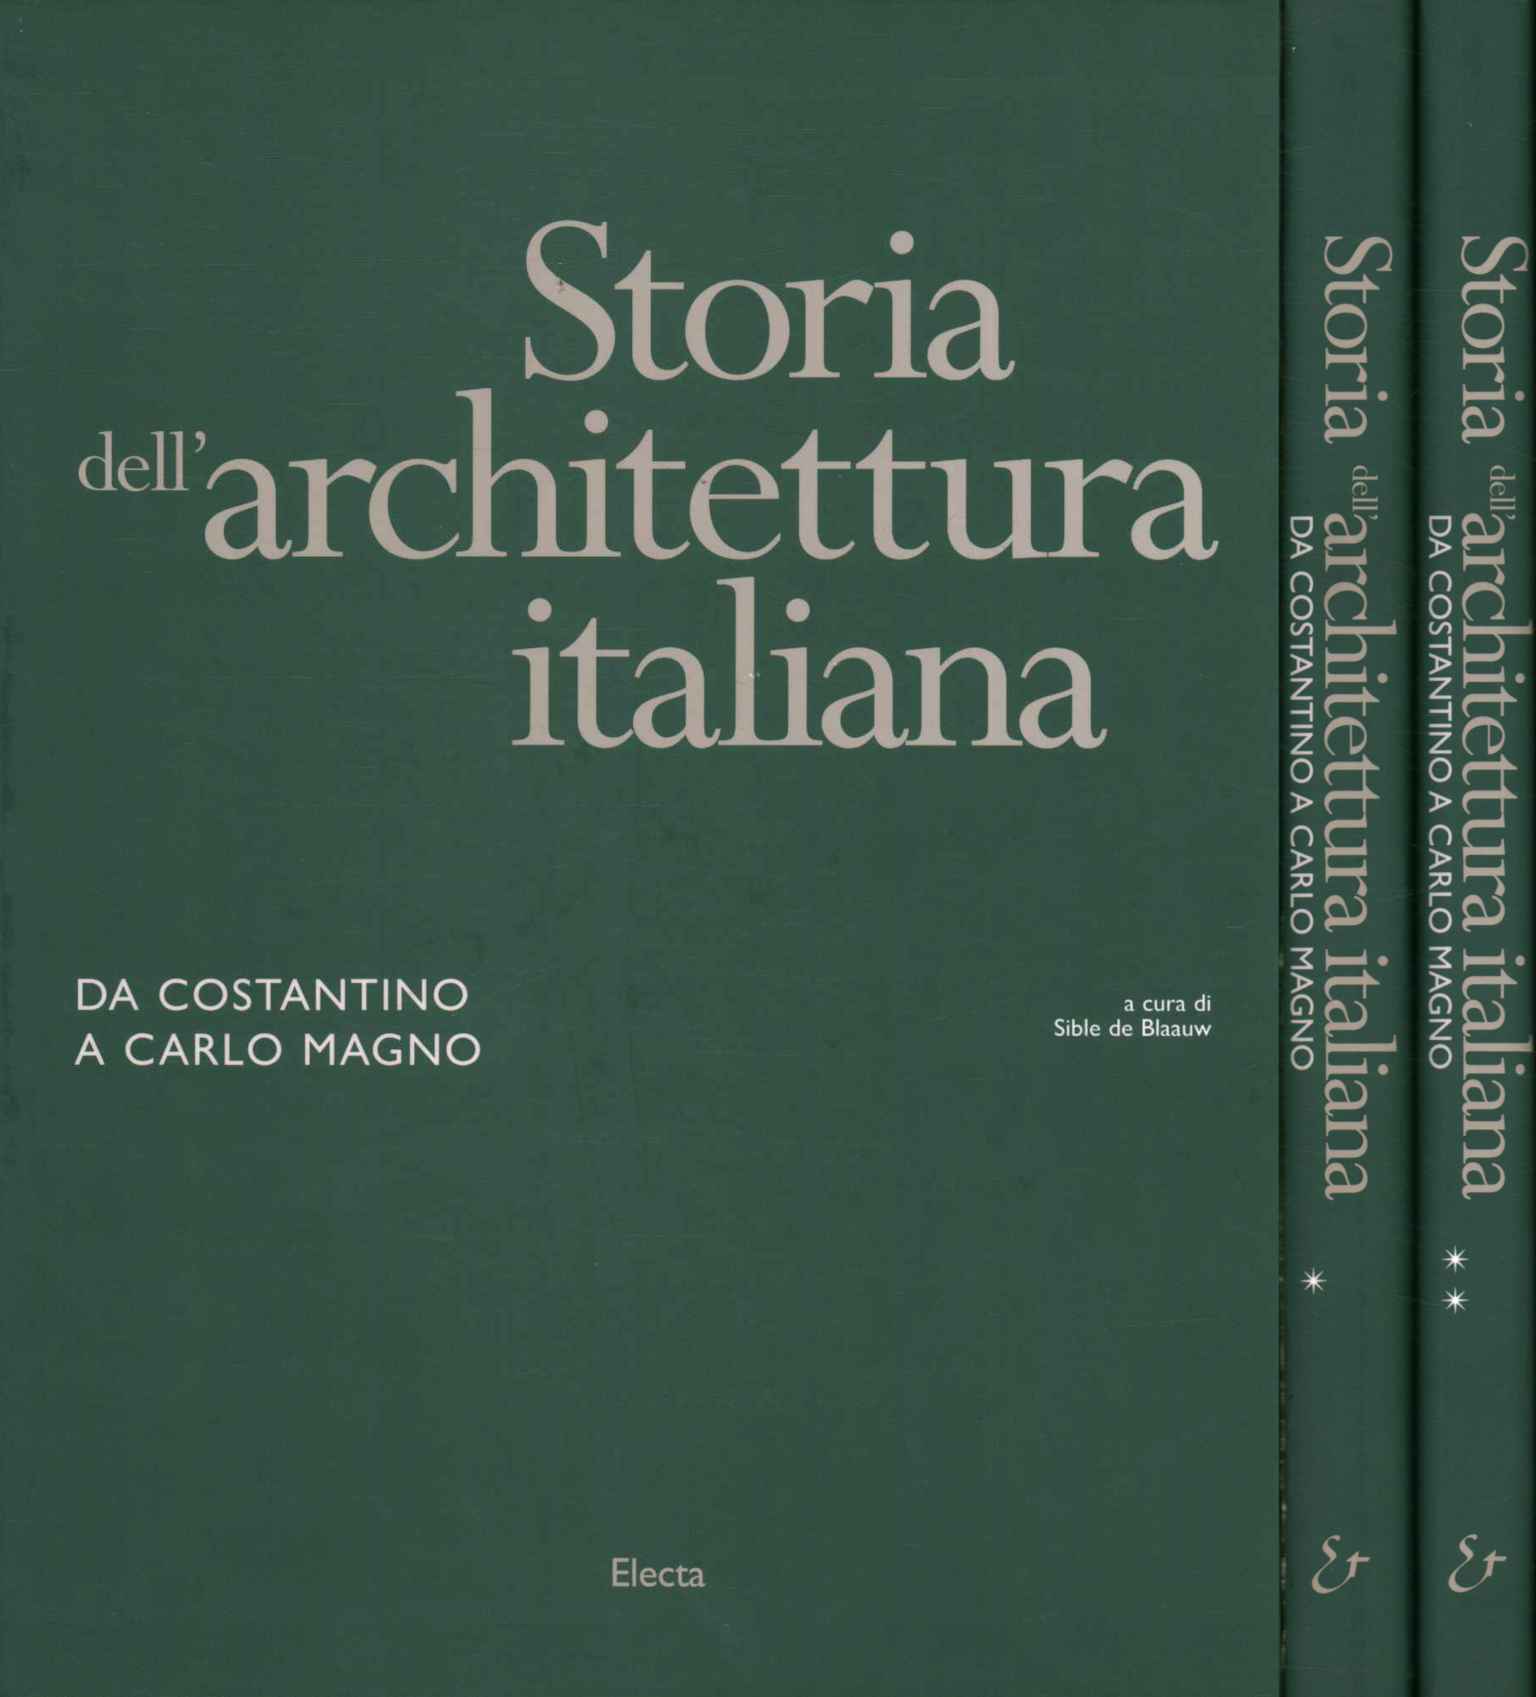 Storia dell'architettura. Da Cost,Storia dell'architettura italiana.%,Storia dell'architettura italiana.%,Storia dell'architettura italiana.%